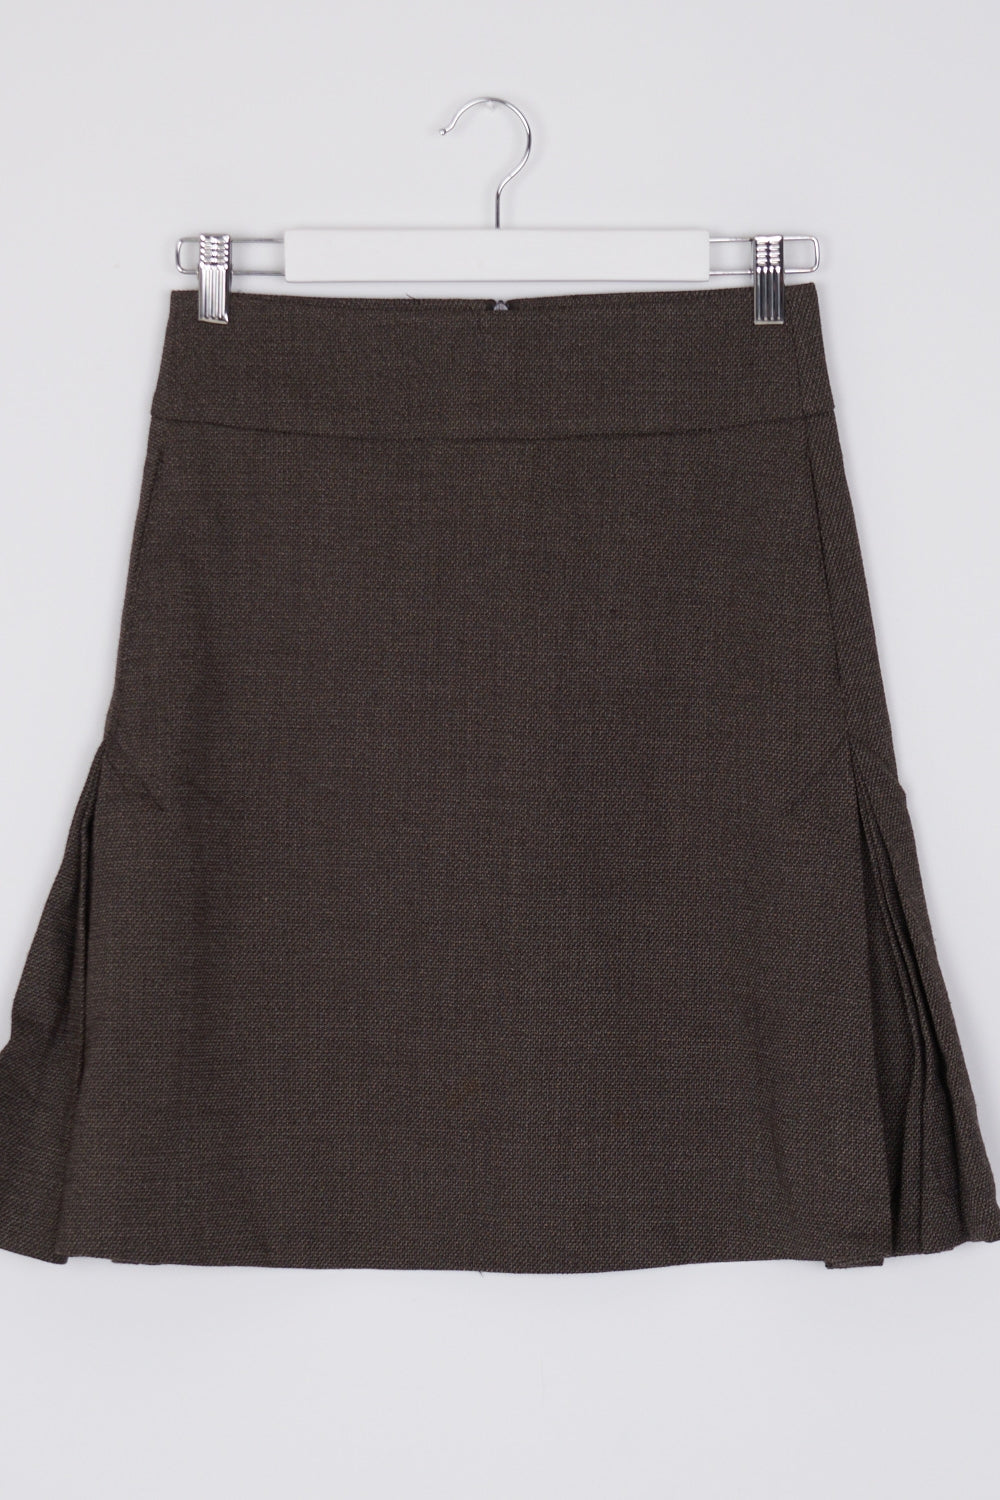 Tatuum Brown Pleated Side Skirt 6